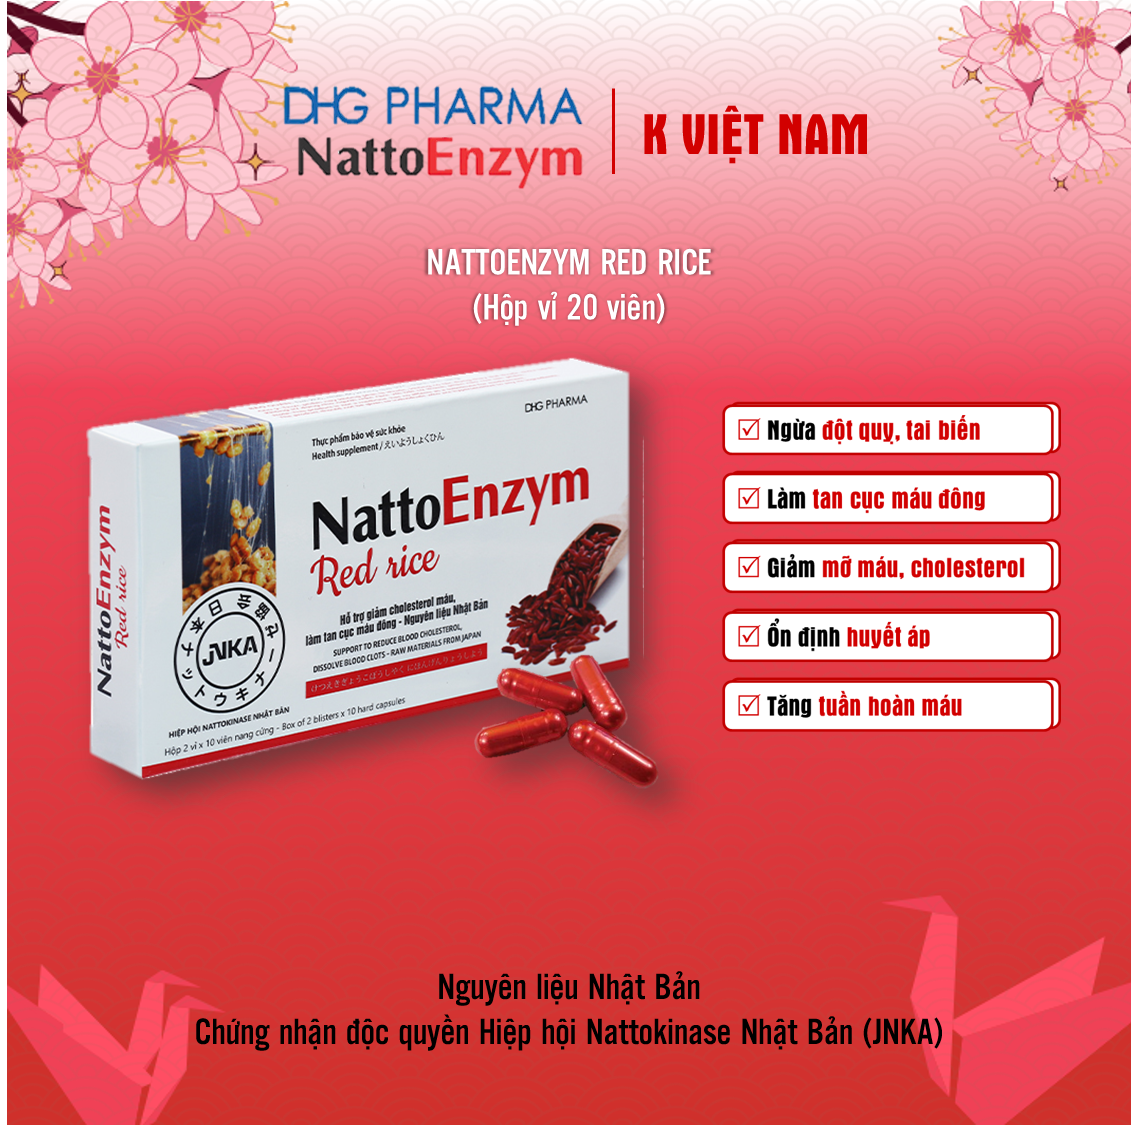 NattoEnzym Red Rice - Ngừa Đột qụy, giảm cholesterol, tan cục máu đông